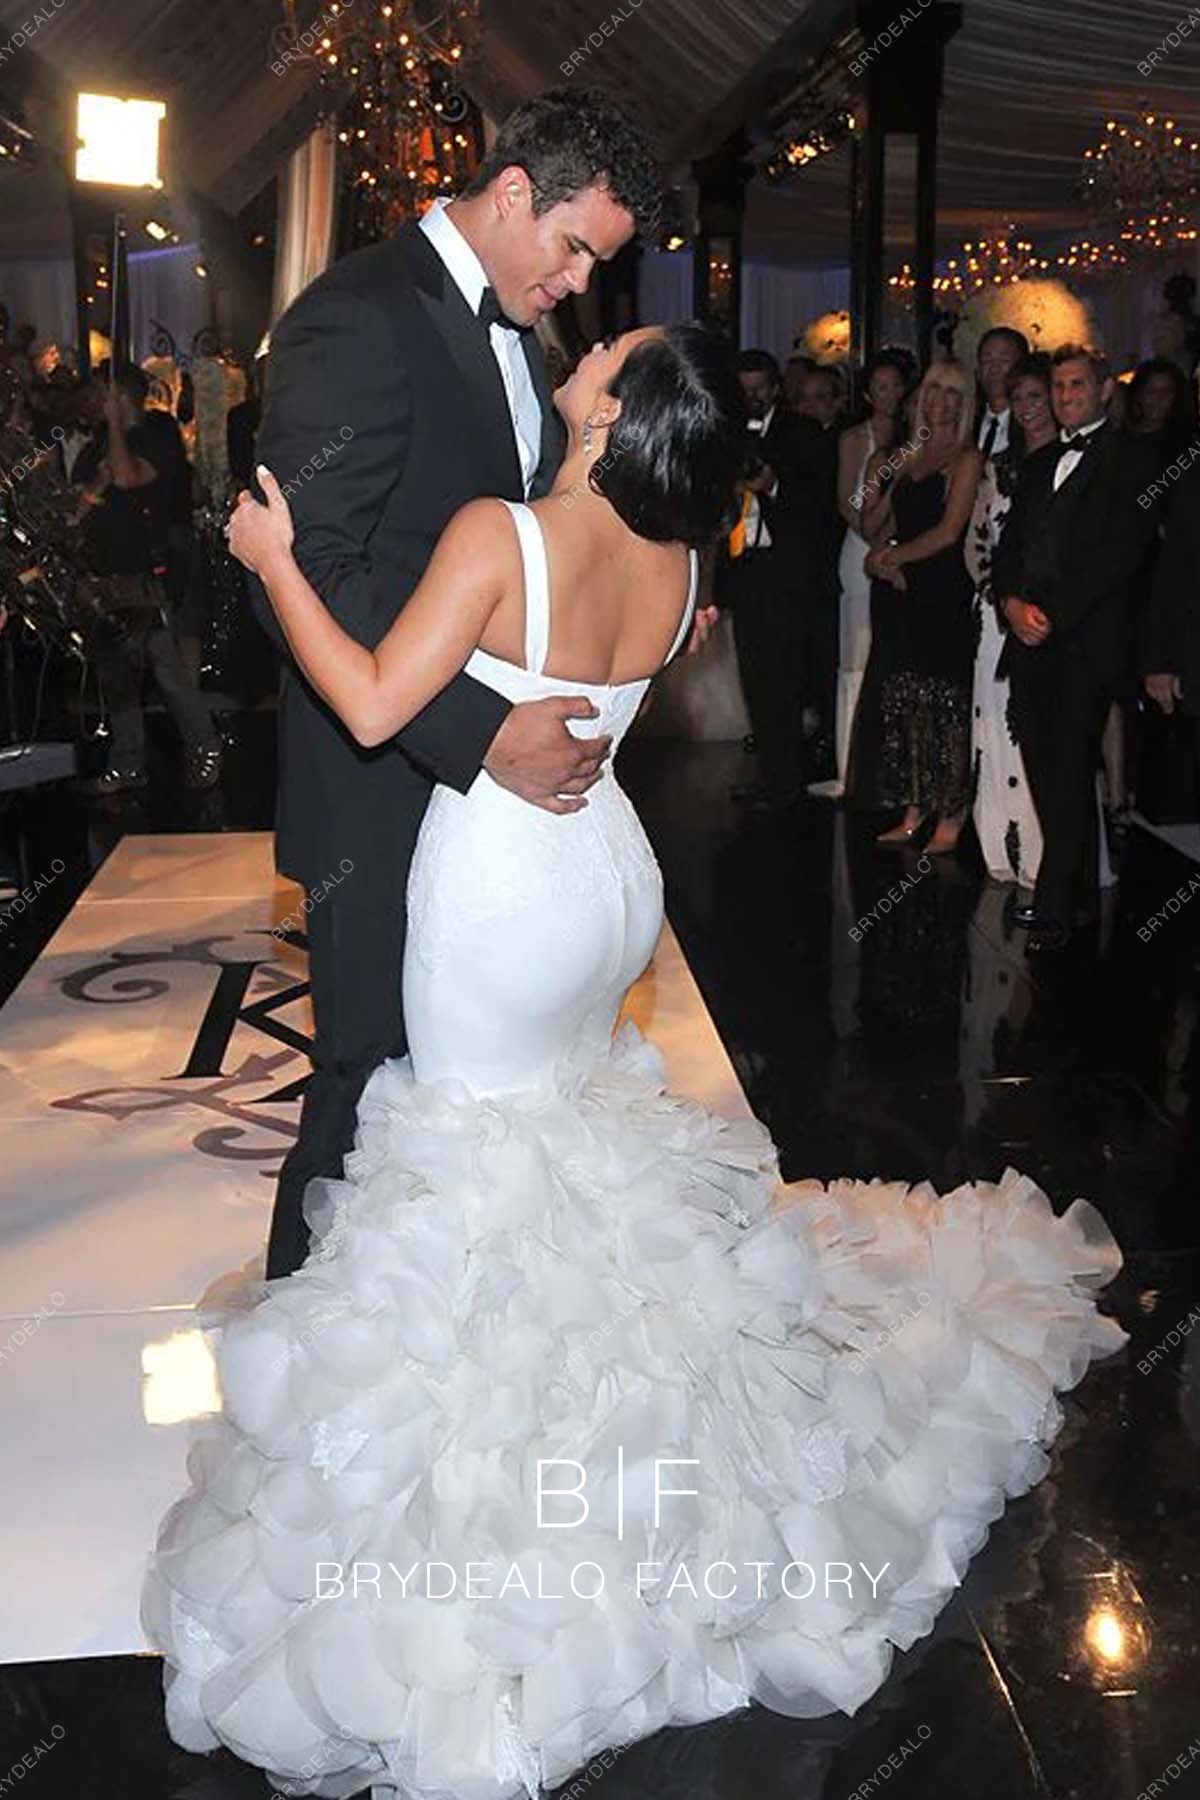 Kim Kardashian and Kanye West wedding, new photos! - LaiaMagazine